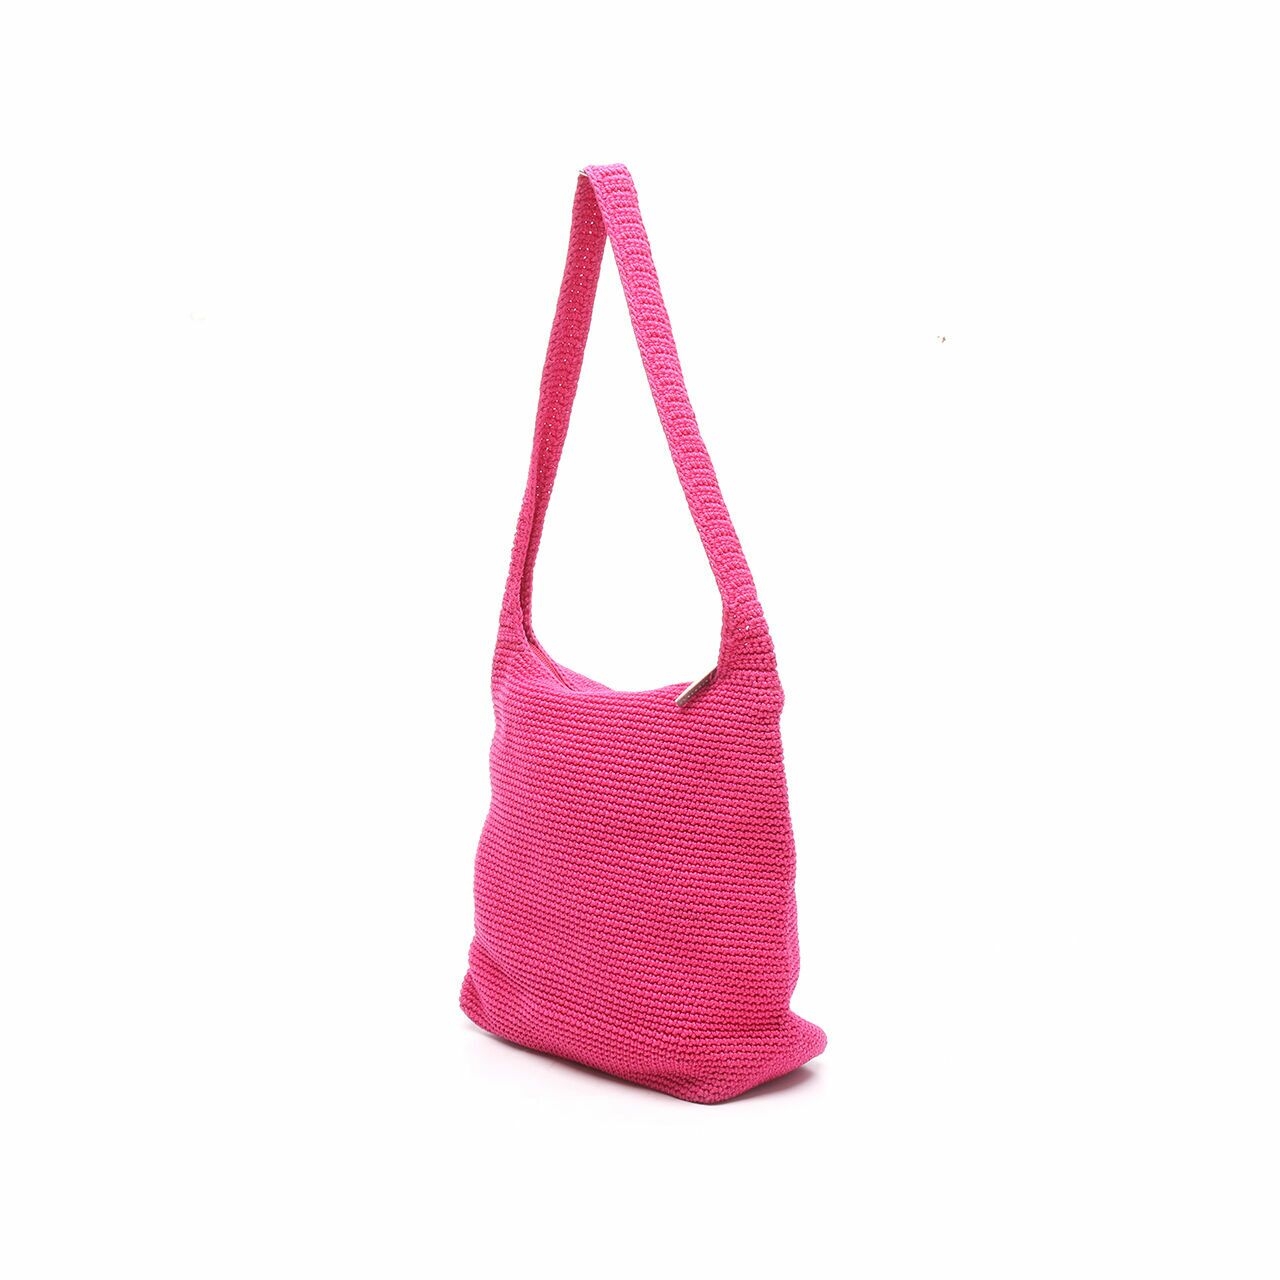 The Sak Pink Shoulder Bag